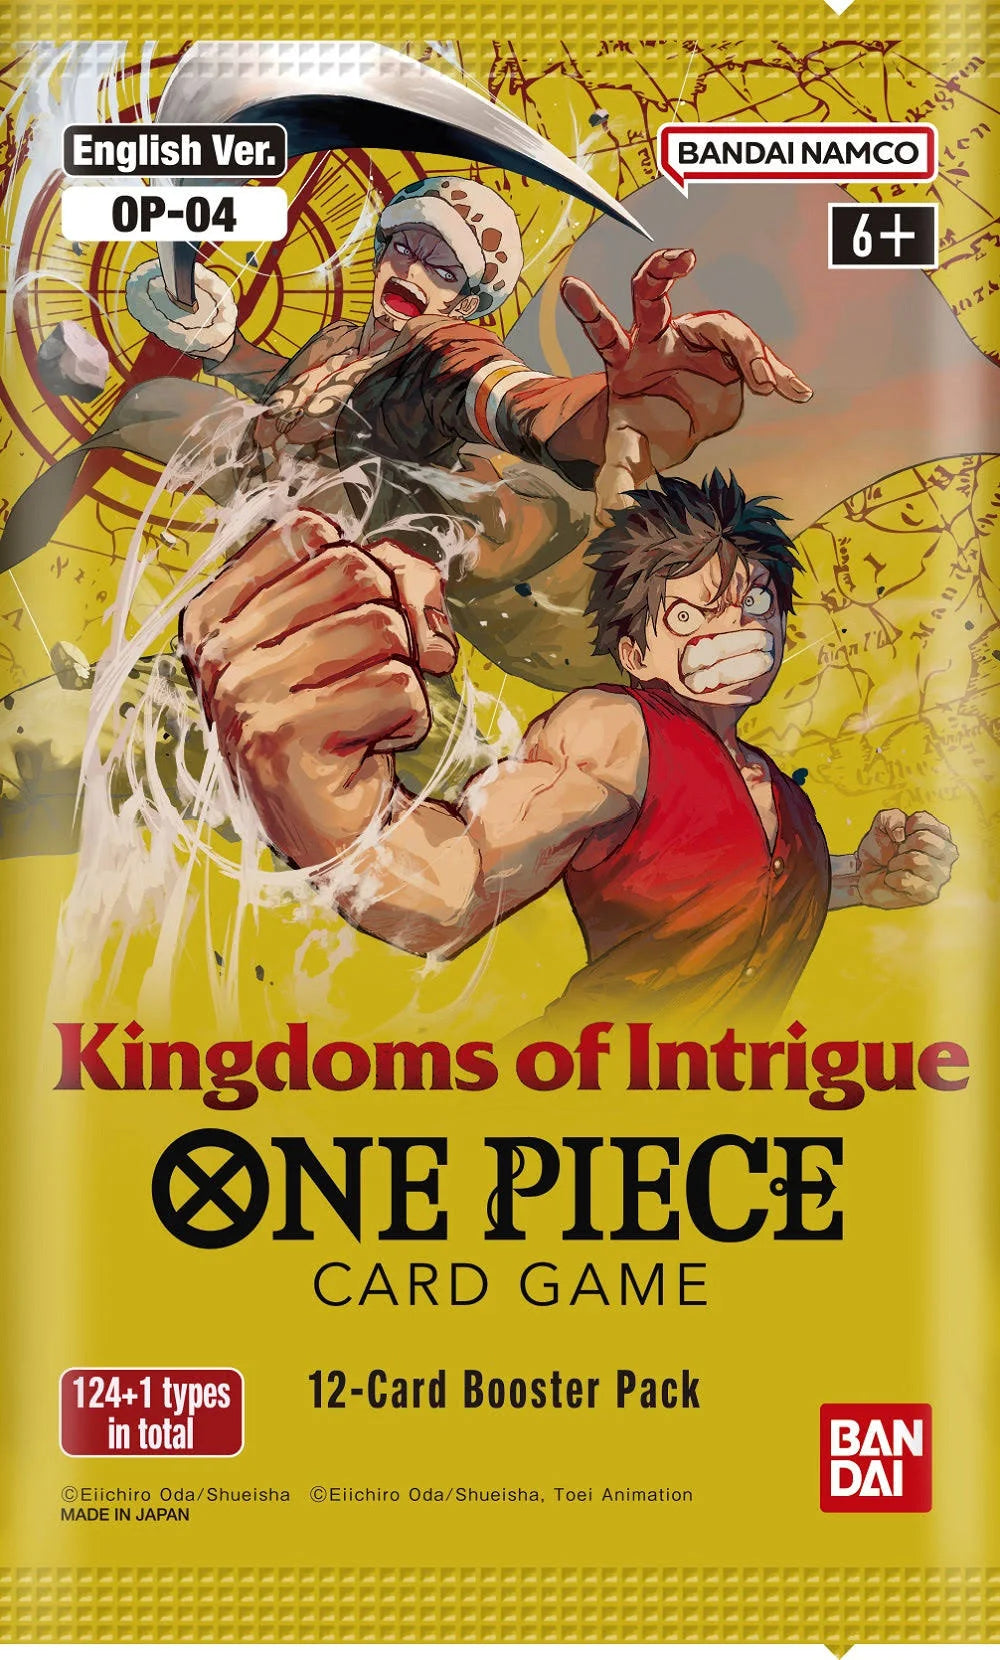 ワンピース TCG: Kingdoms of Intrigue (OP-04) ブースターボックス